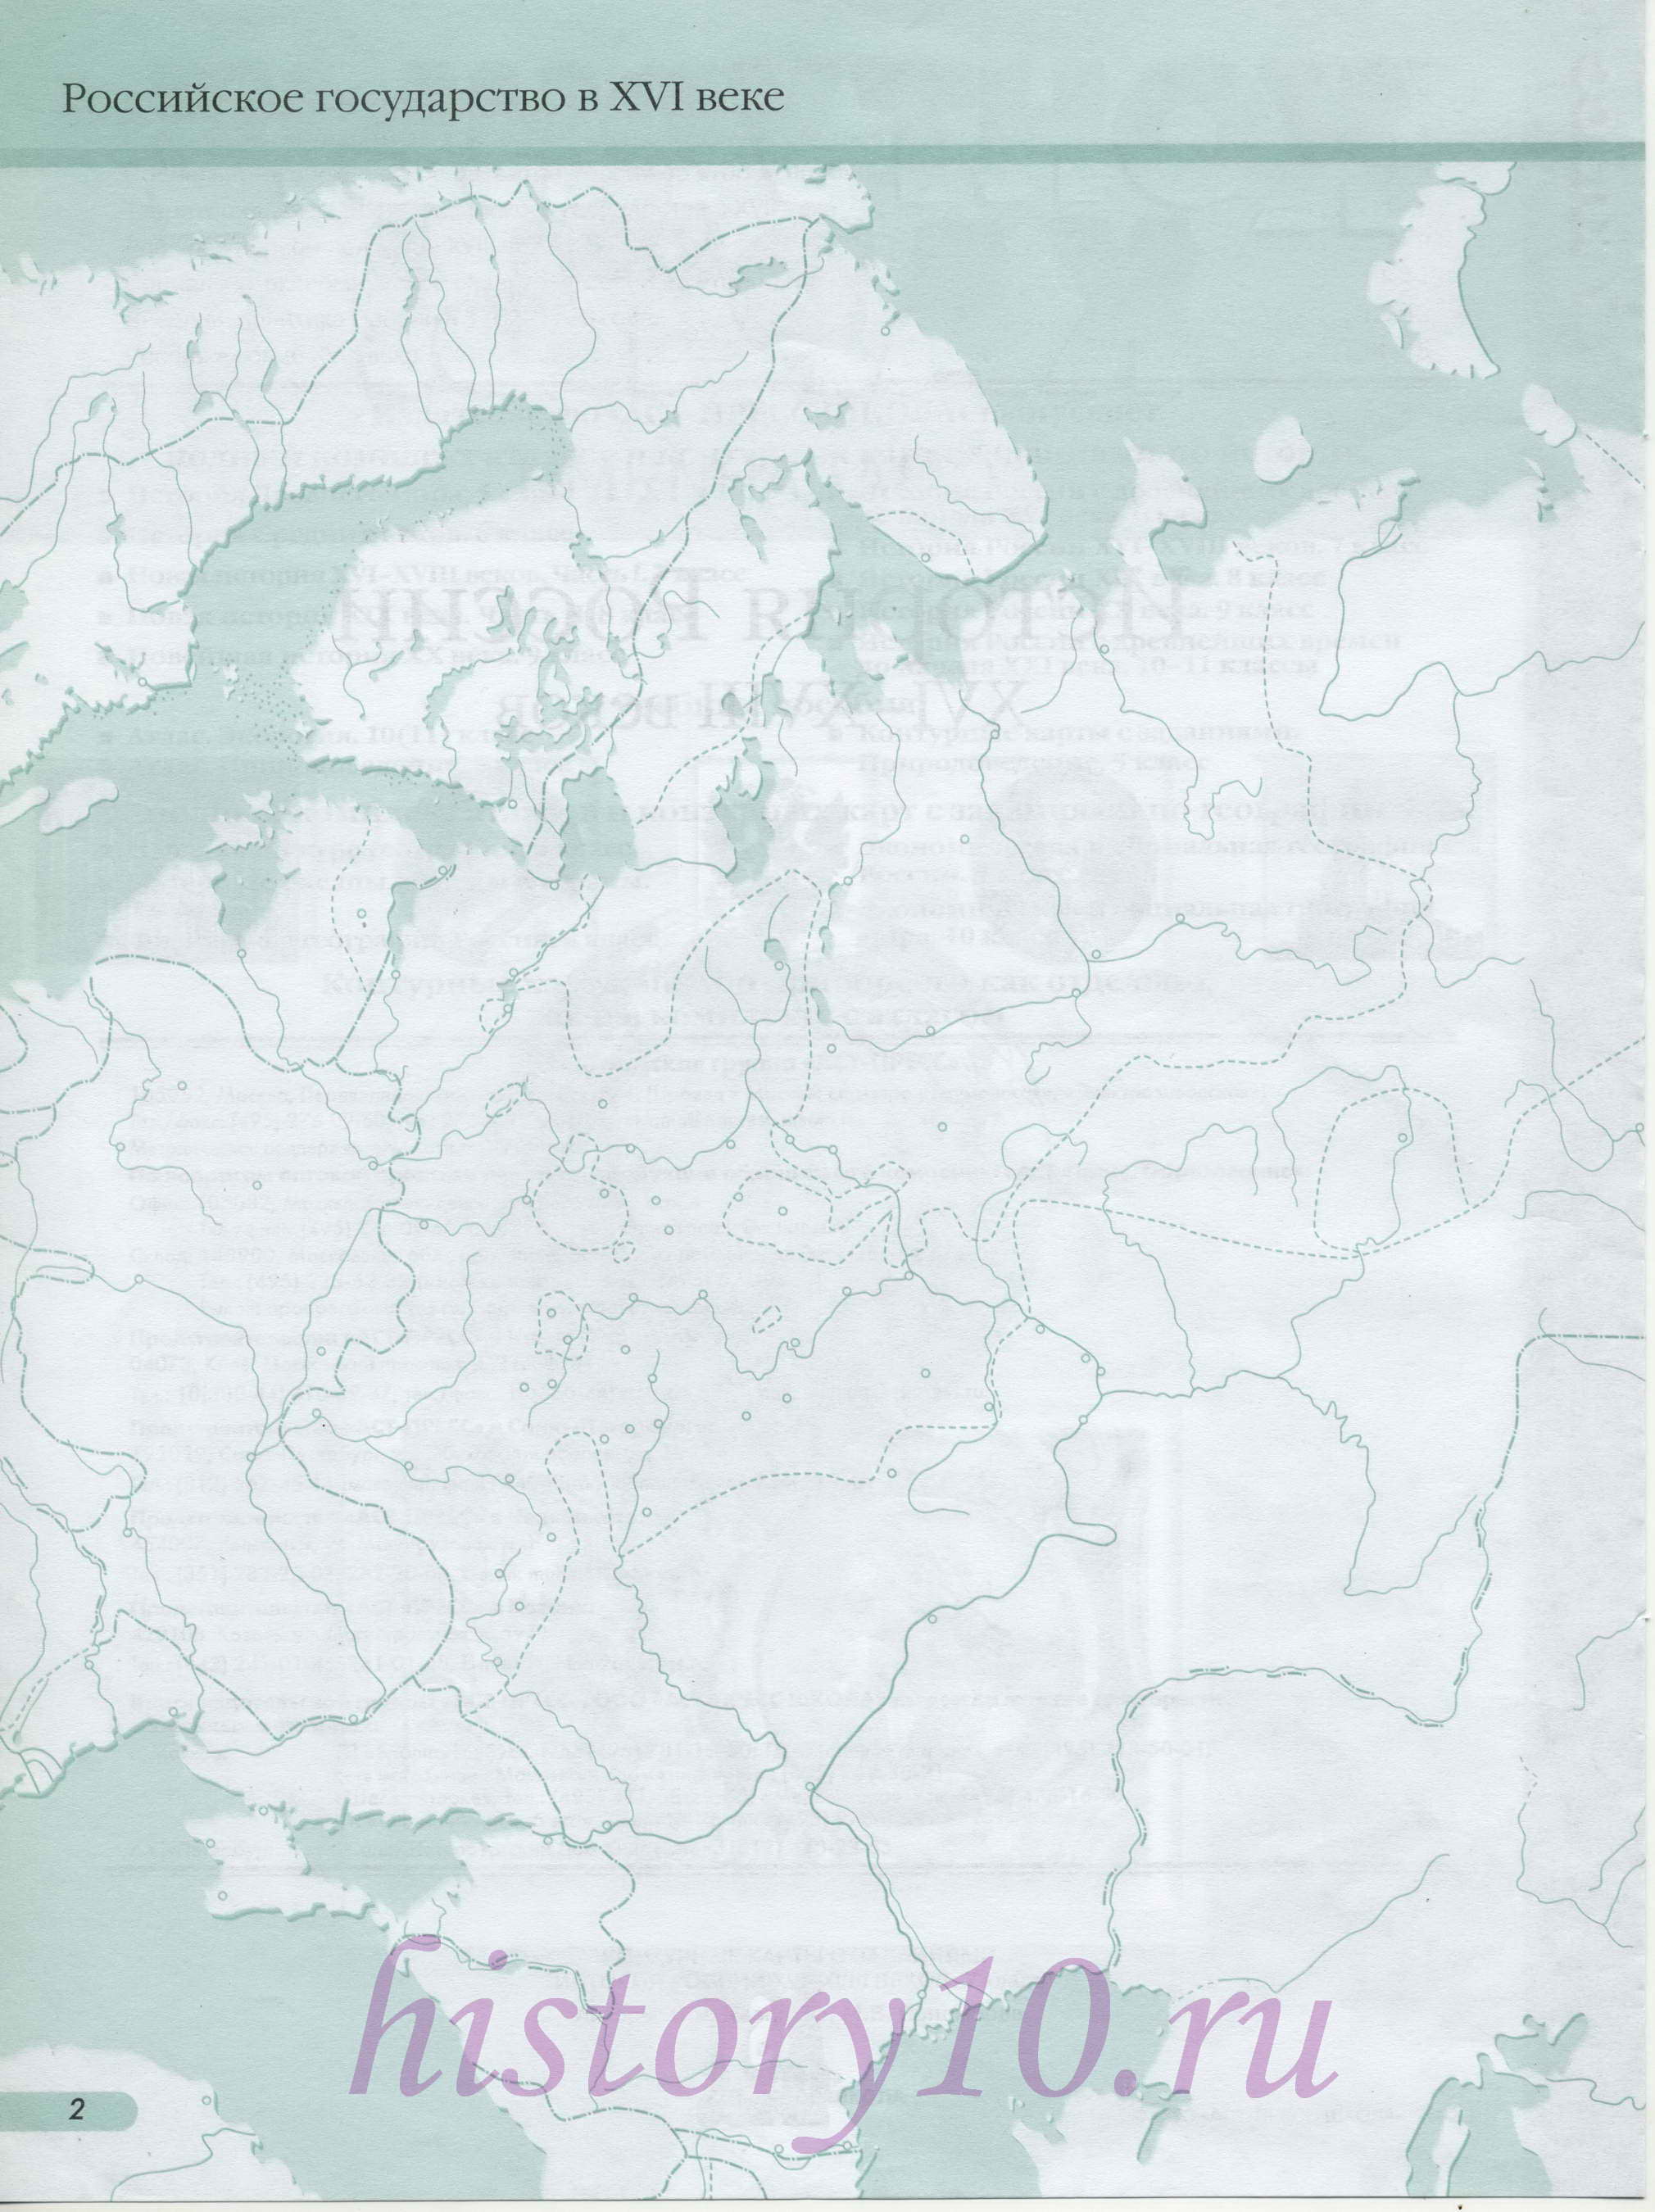 Контурная карта России в 16 веке. Контурная карта Российского государства в 16 веке - Ливонская война, A0 - 